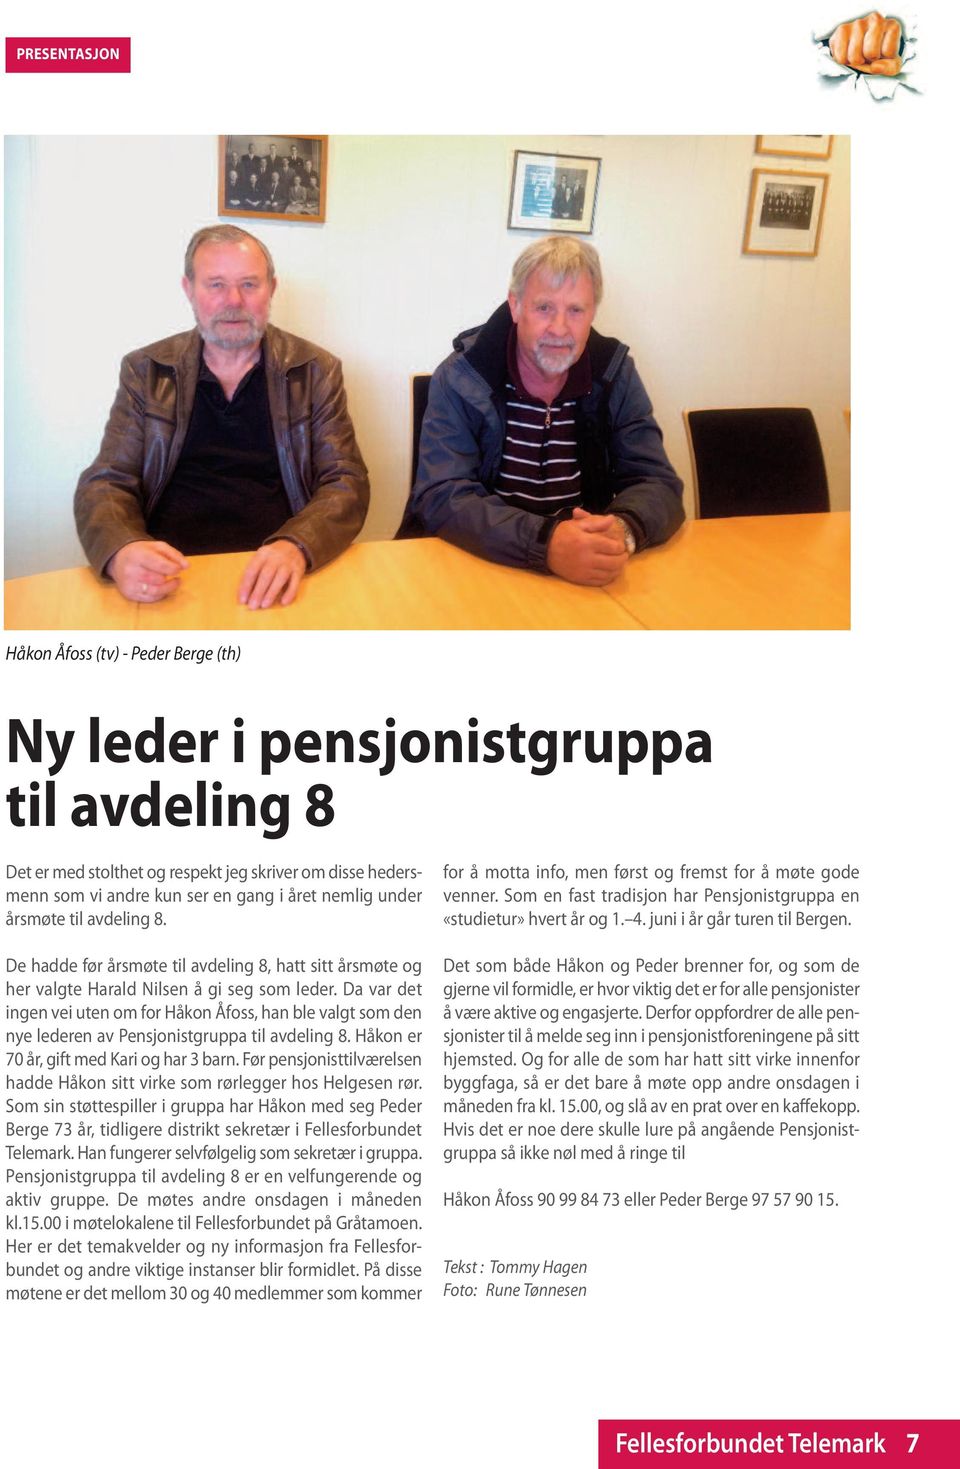 Da var det ingen vei uten om for Håkon Åfoss, han ble valgt som den nye lederen av Pensjonistgruppa til avdeling 8. Håkon er 70 år, gift med Kari og har 3 barn.